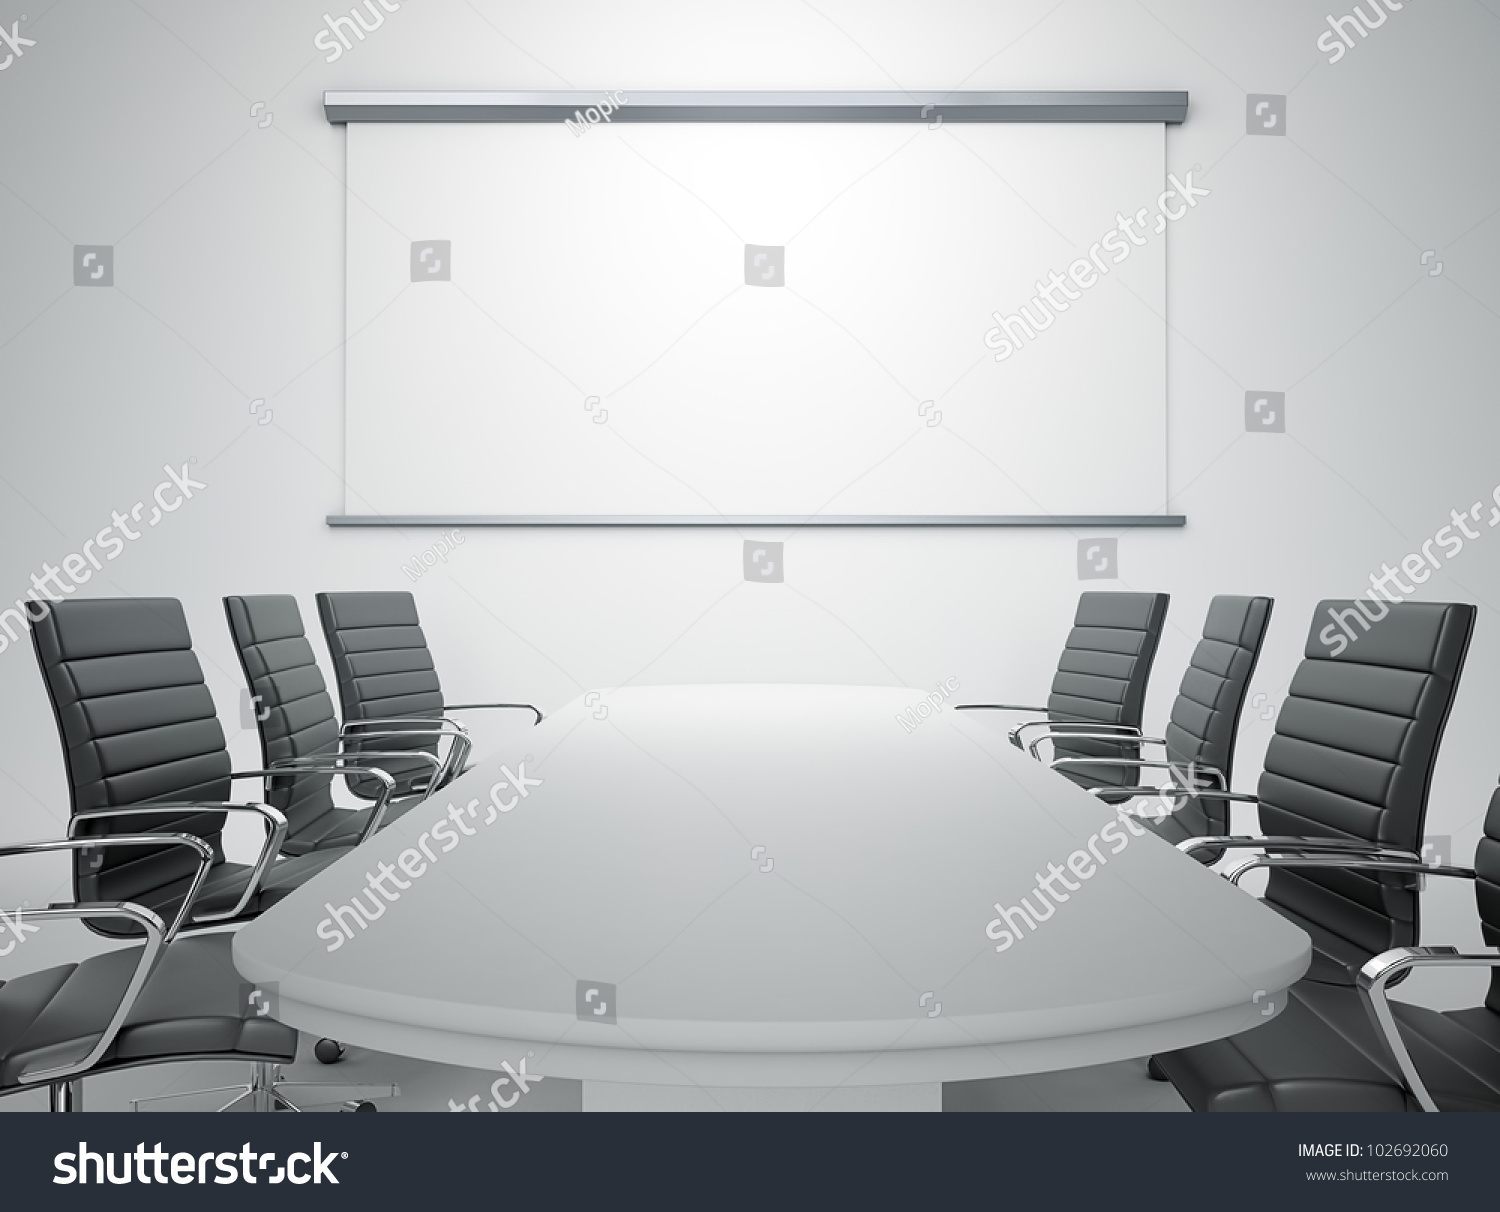 空の会議室と会議テーブル のイラスト素材